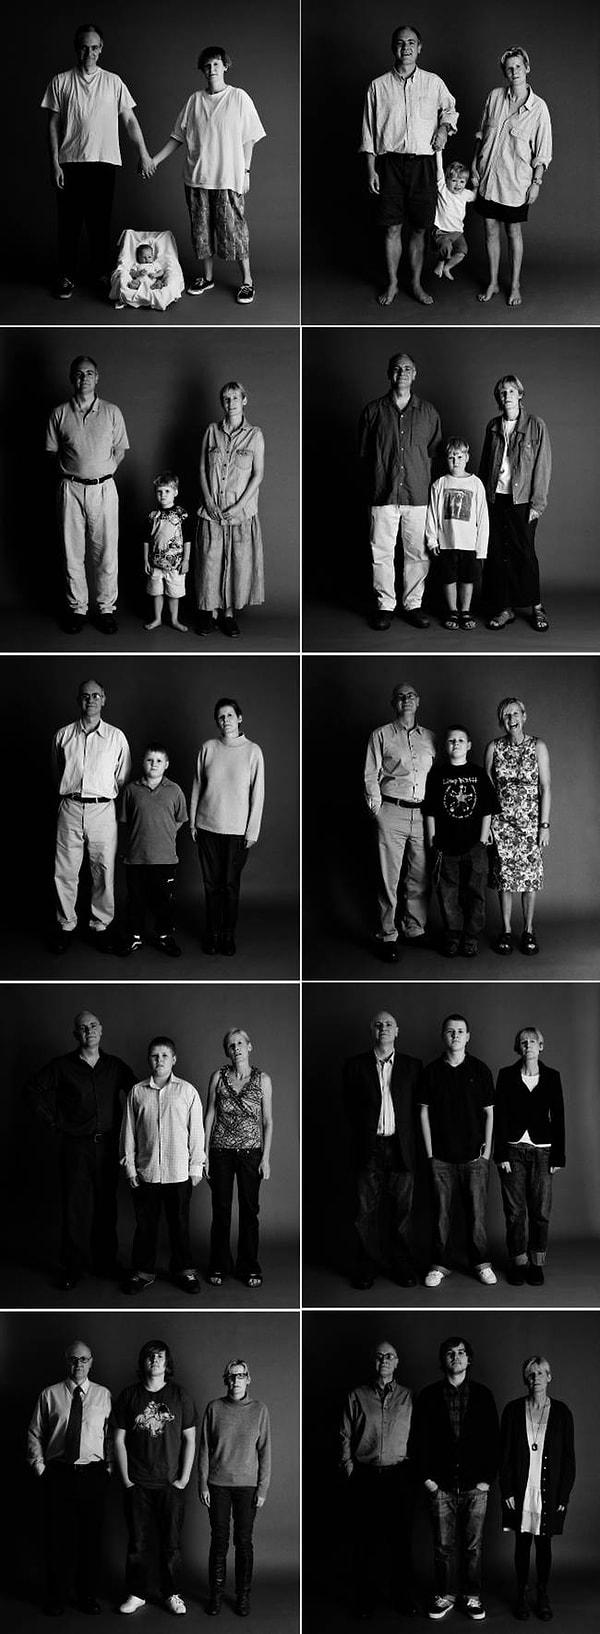 13. 20 yıl boyunca düzenli aralıklarla fotoğraf çektiren aile.